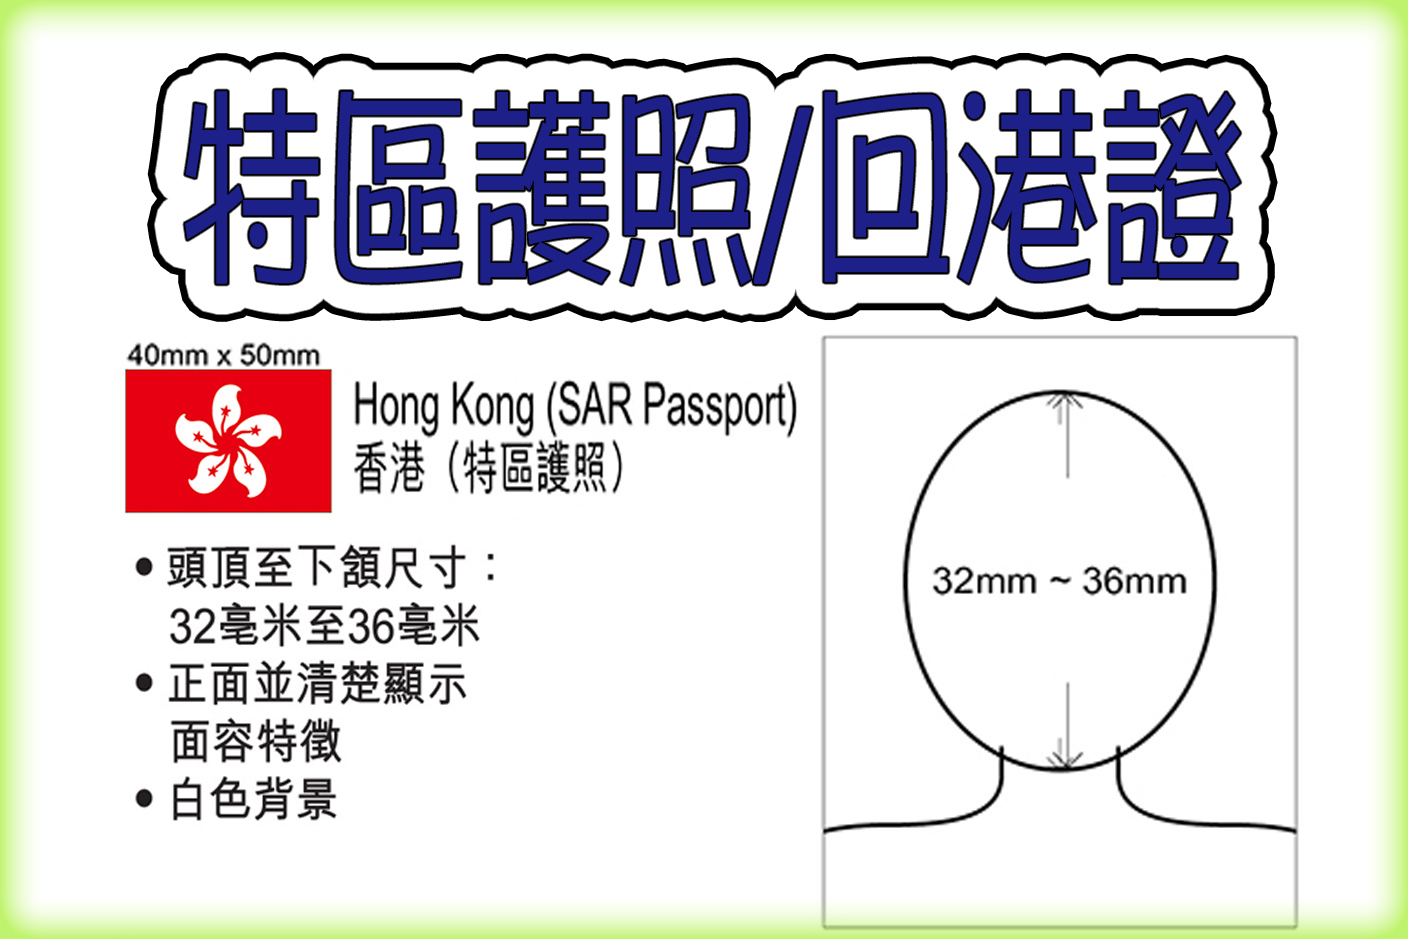 Hong Kong SAR Passport